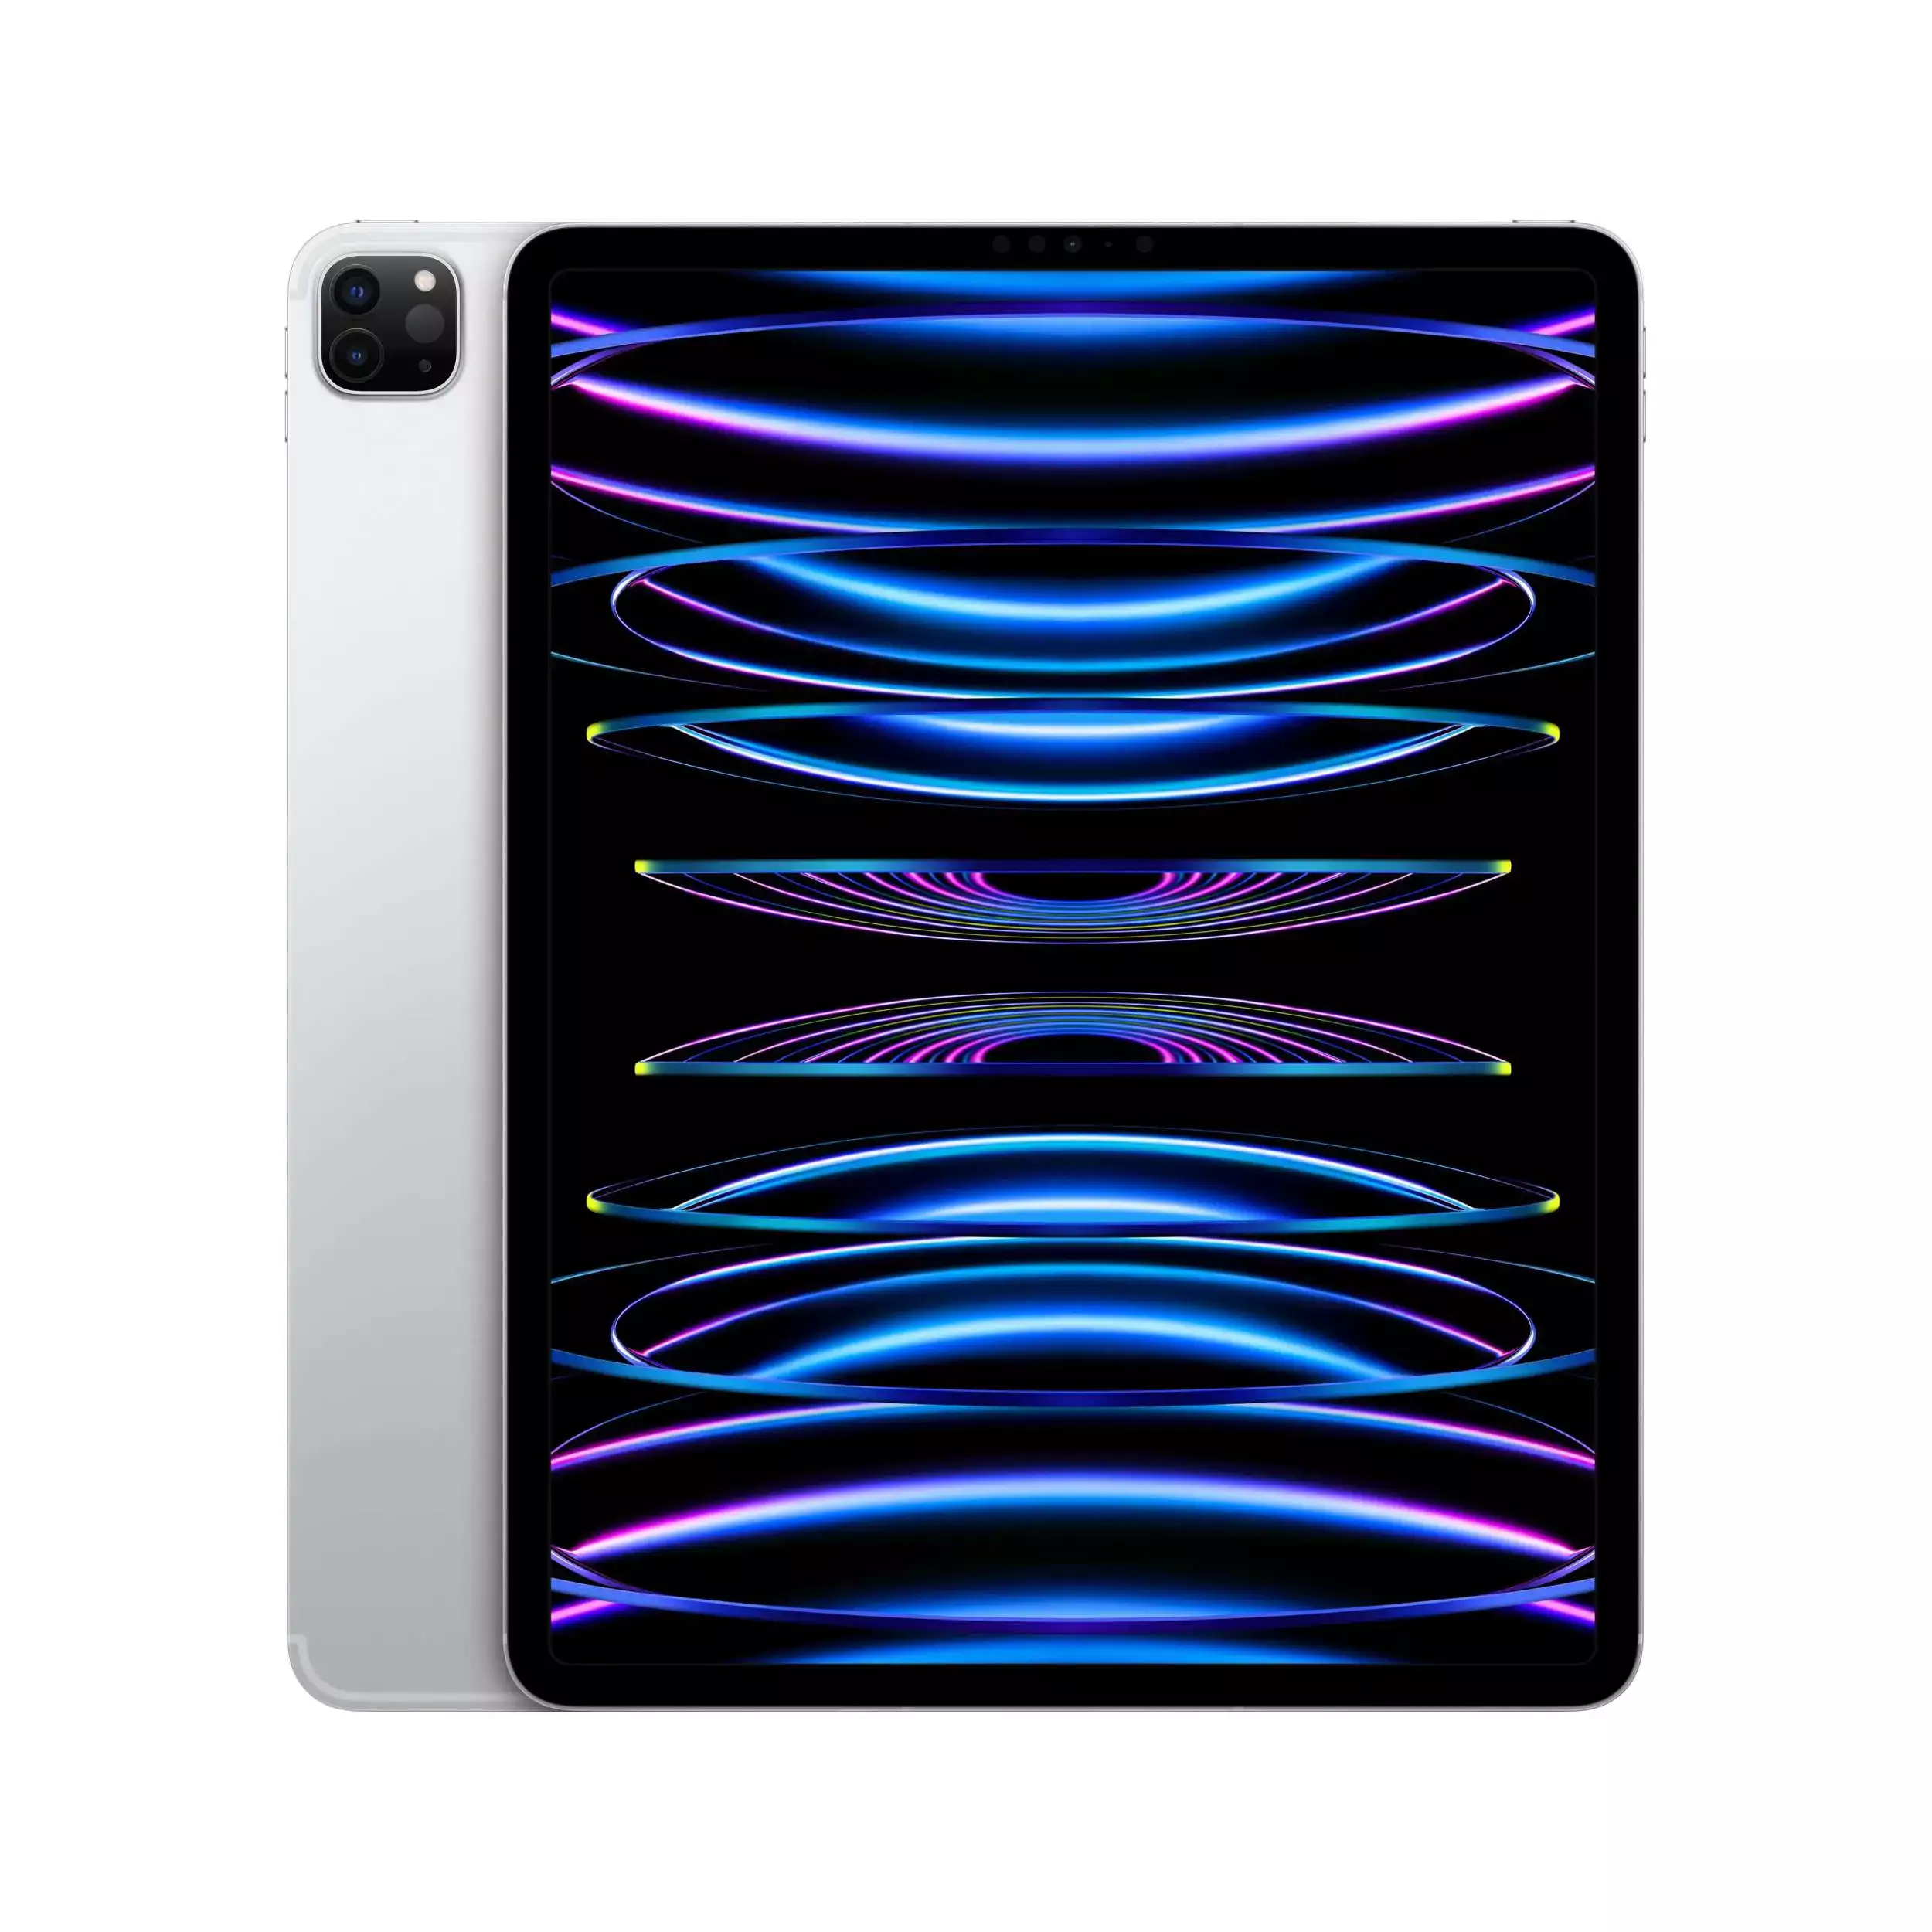 iPad Pro 12.9 inç Wi‑Fi + Cellular 256GB Gümüş MP213TU/A